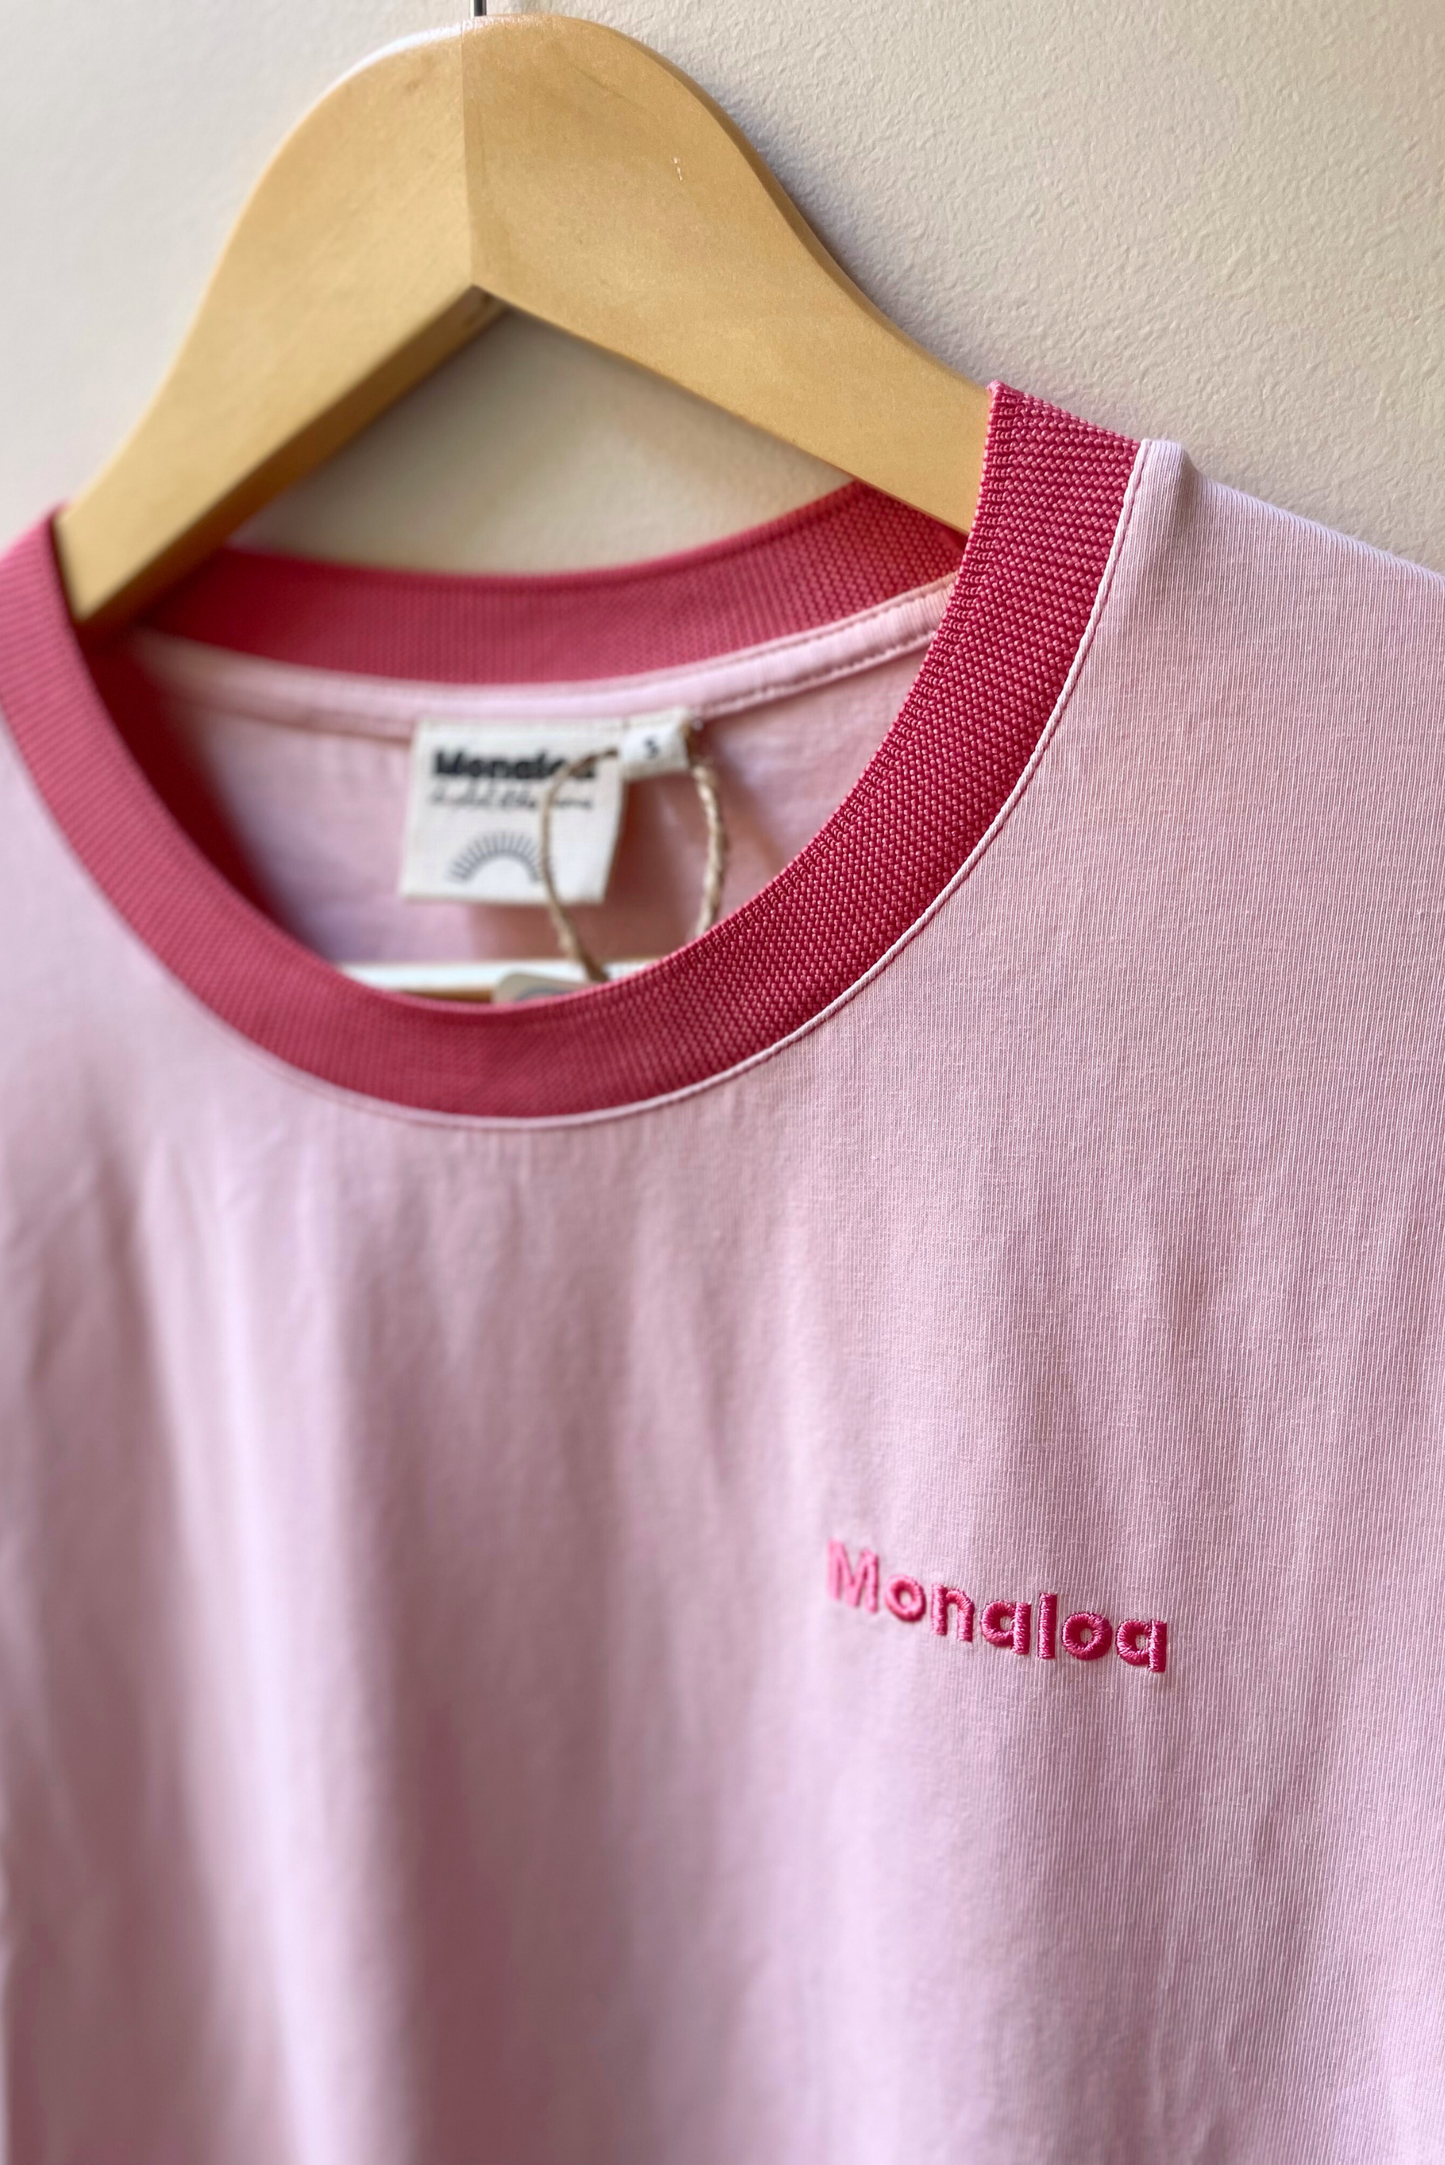 L'Imparfaite Robe tee-shirt rose